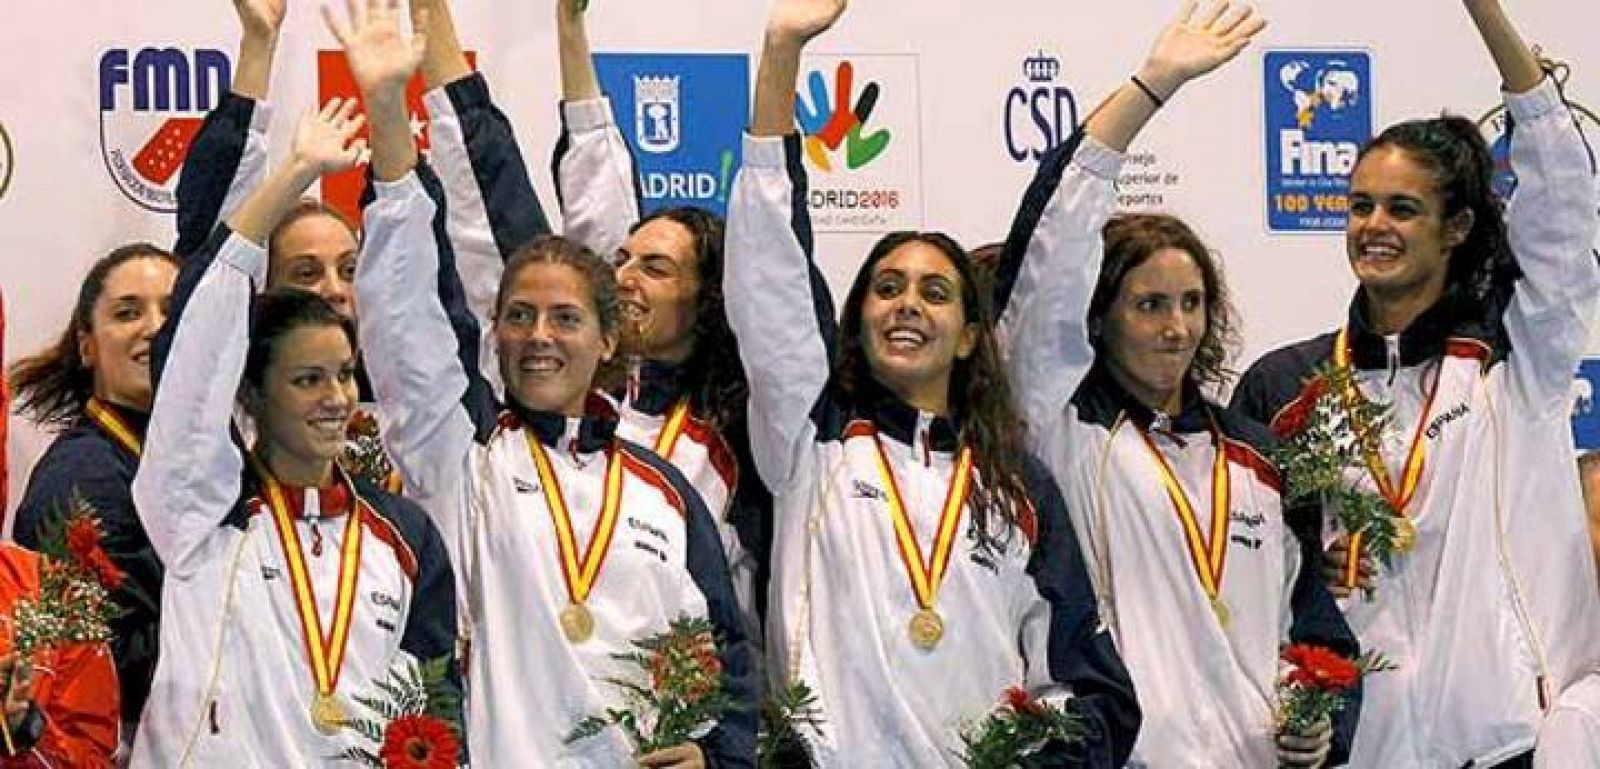 Las integrantes del equipo español de natación sincronizada saludan desde el podio durante la entrega de medallas del III Trofeo Mundial de la Federación Internacional (FINA) disputado en Madrid.